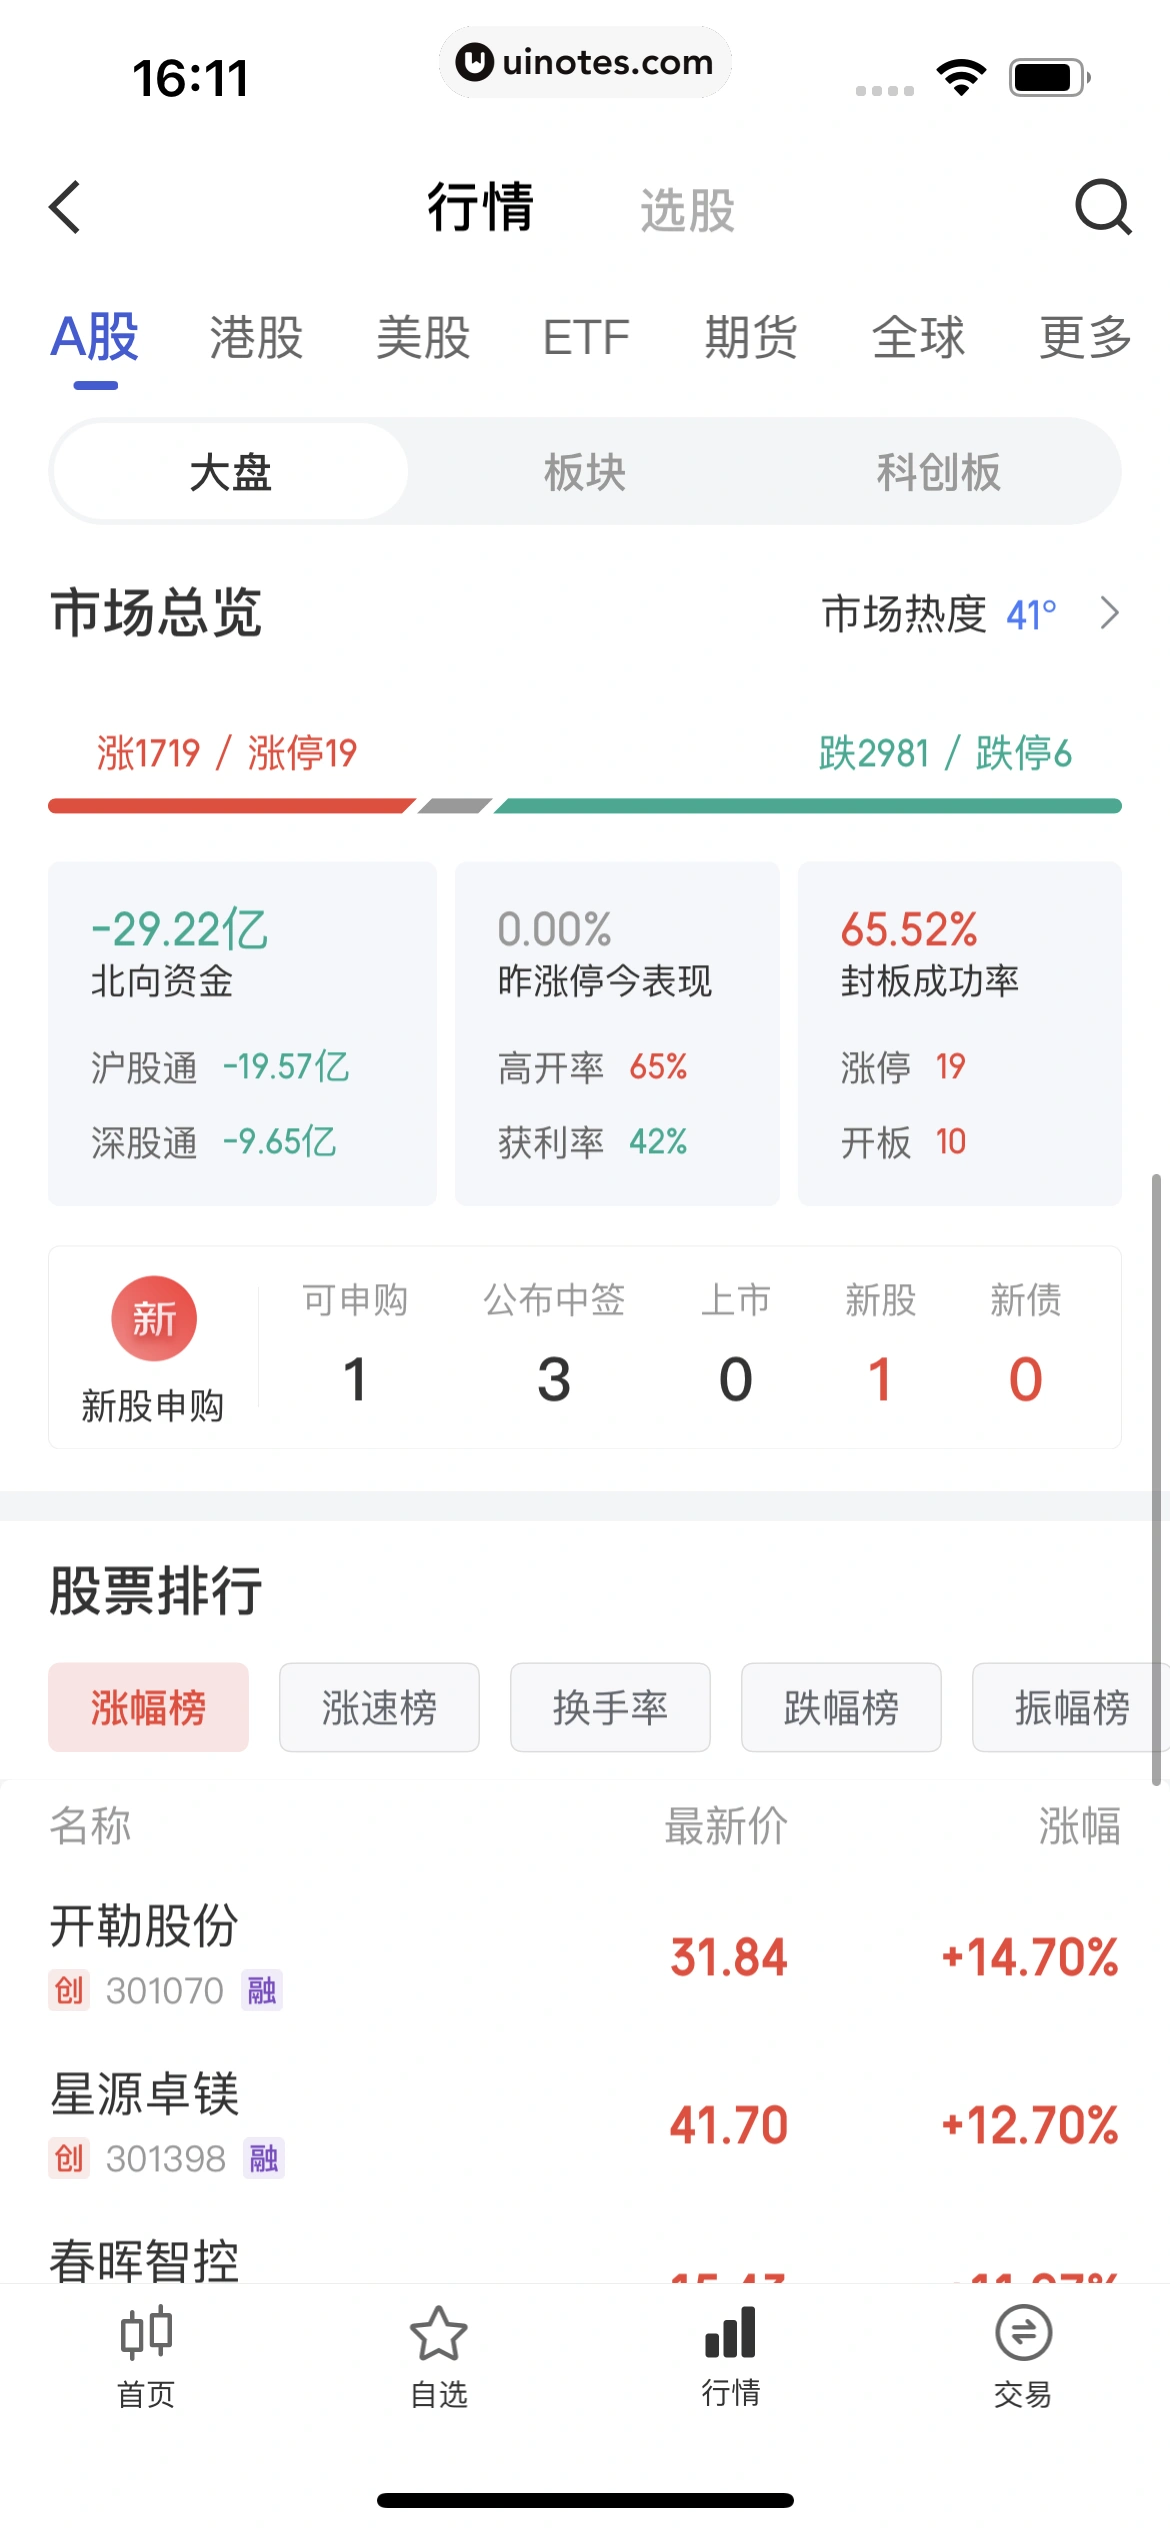 京东金融 App 截图 394 - UI Notes